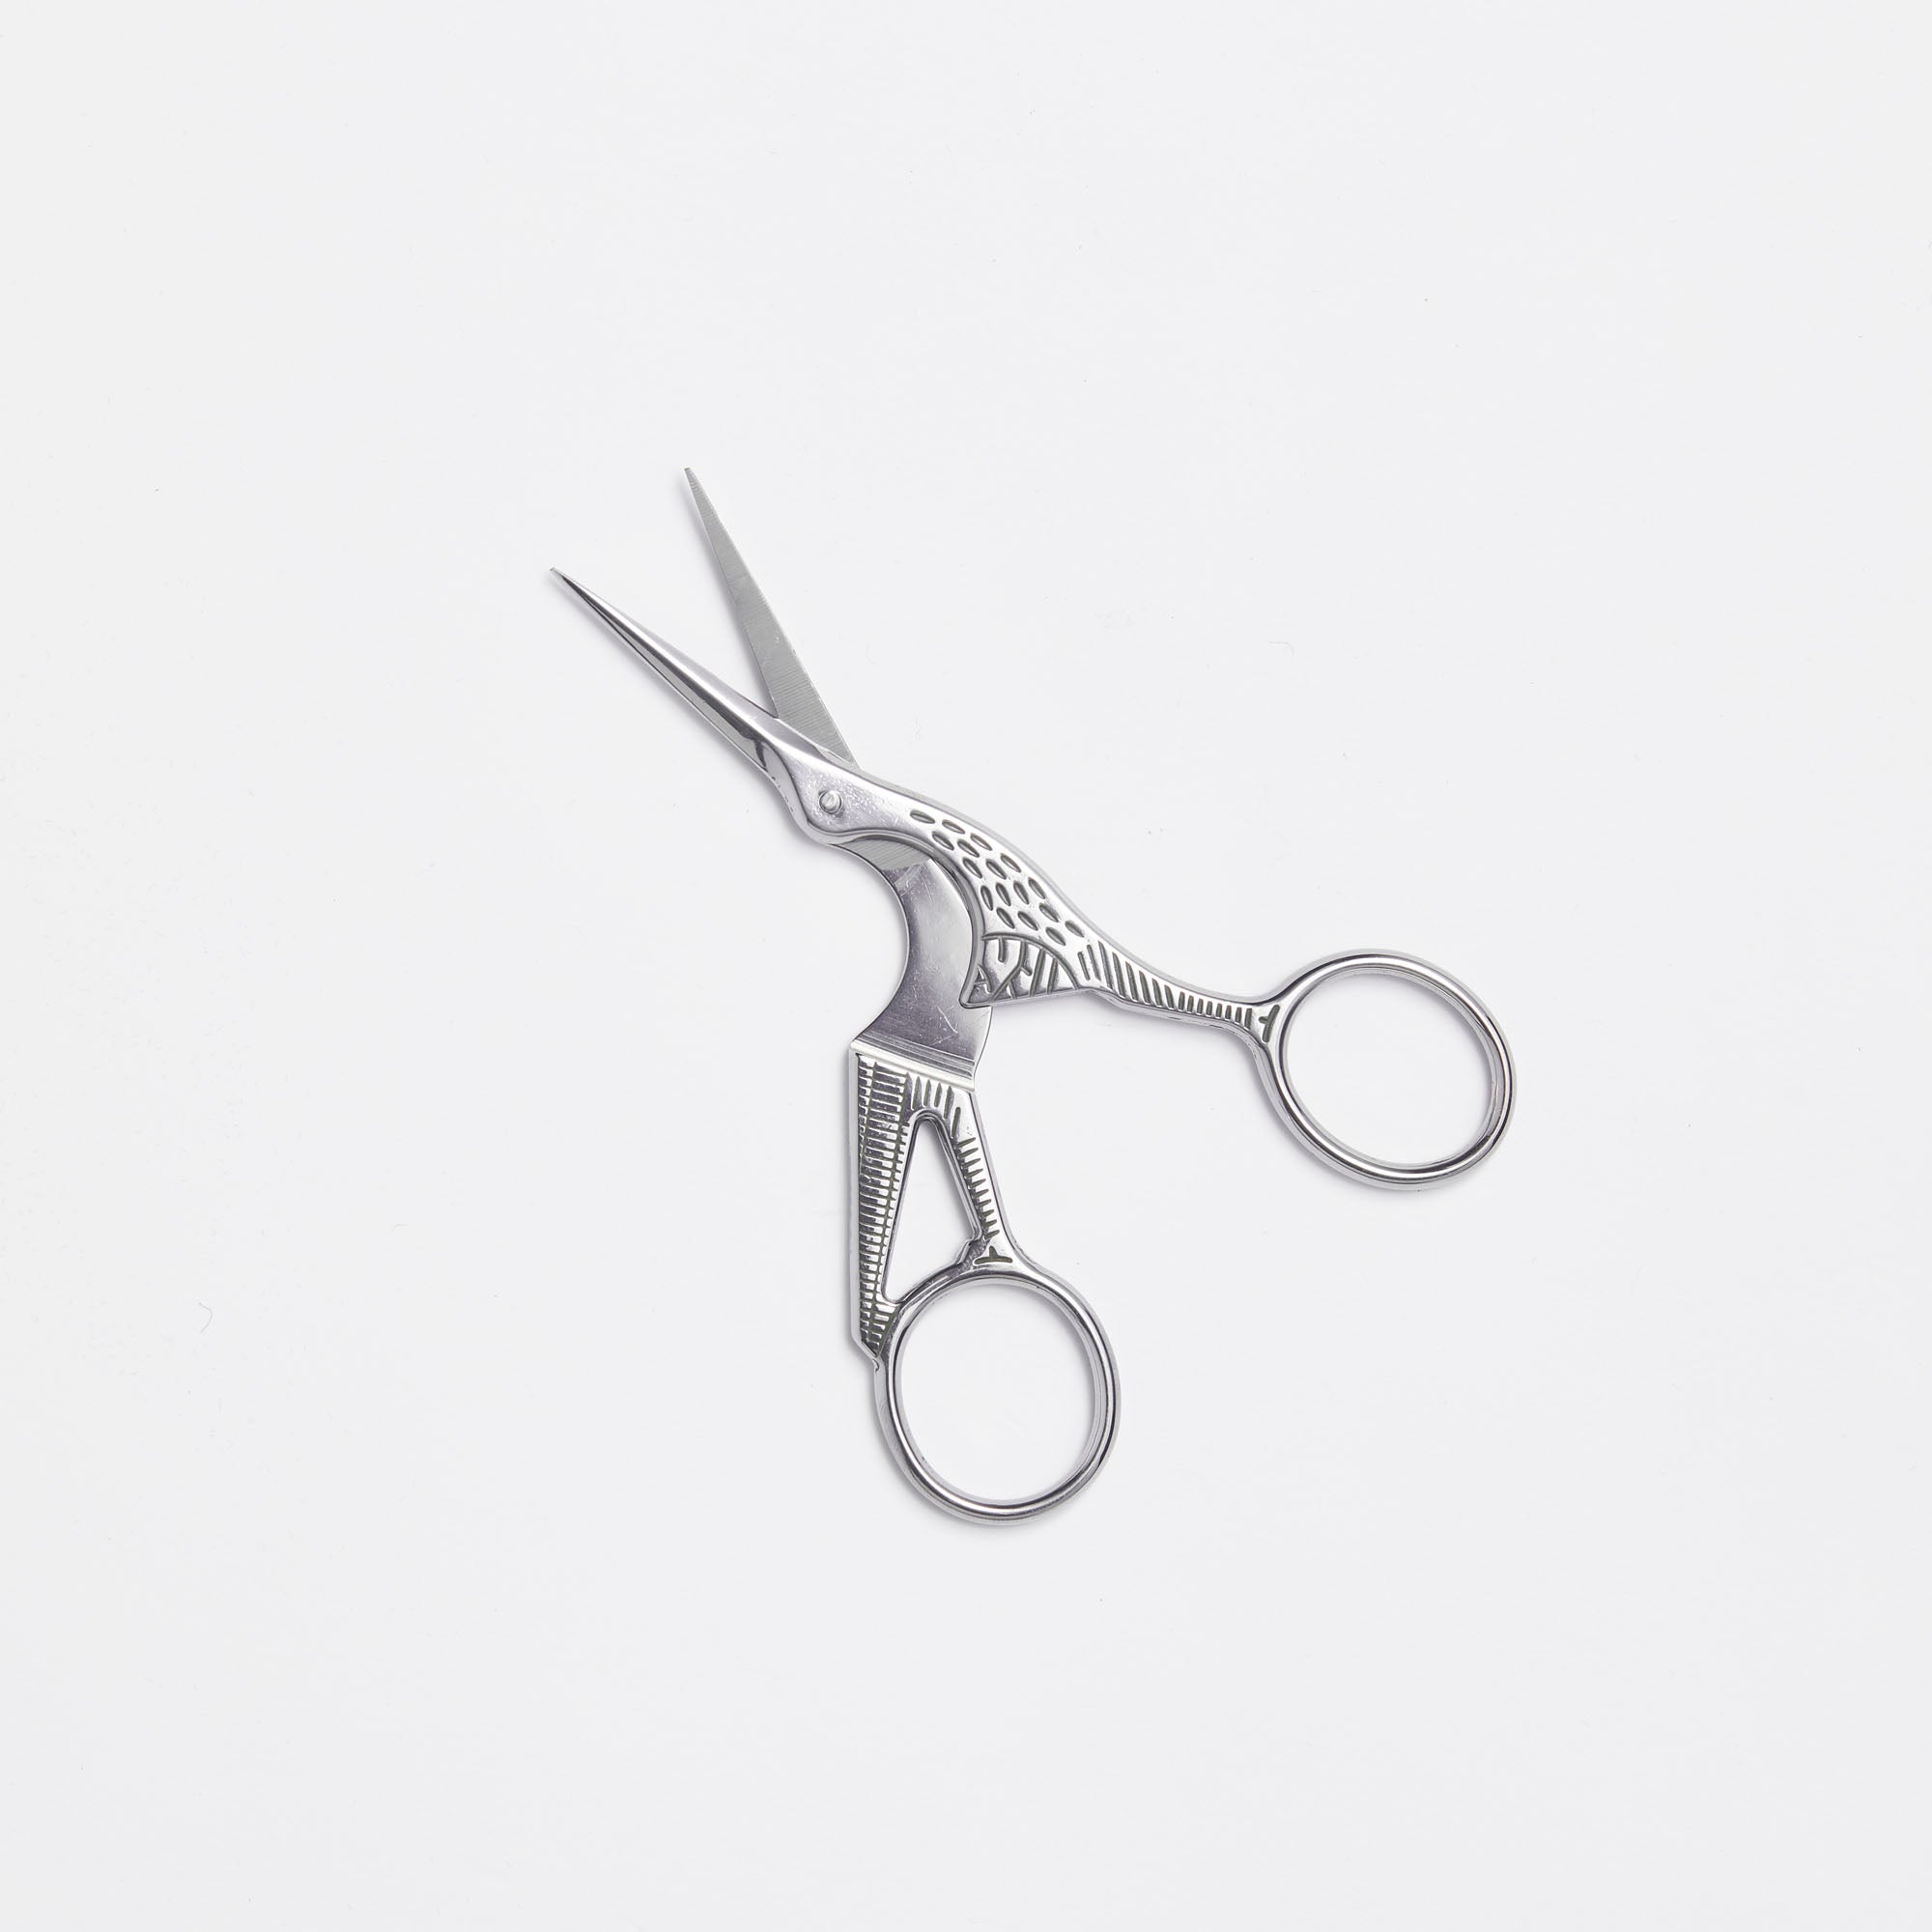 Trimming Scissors